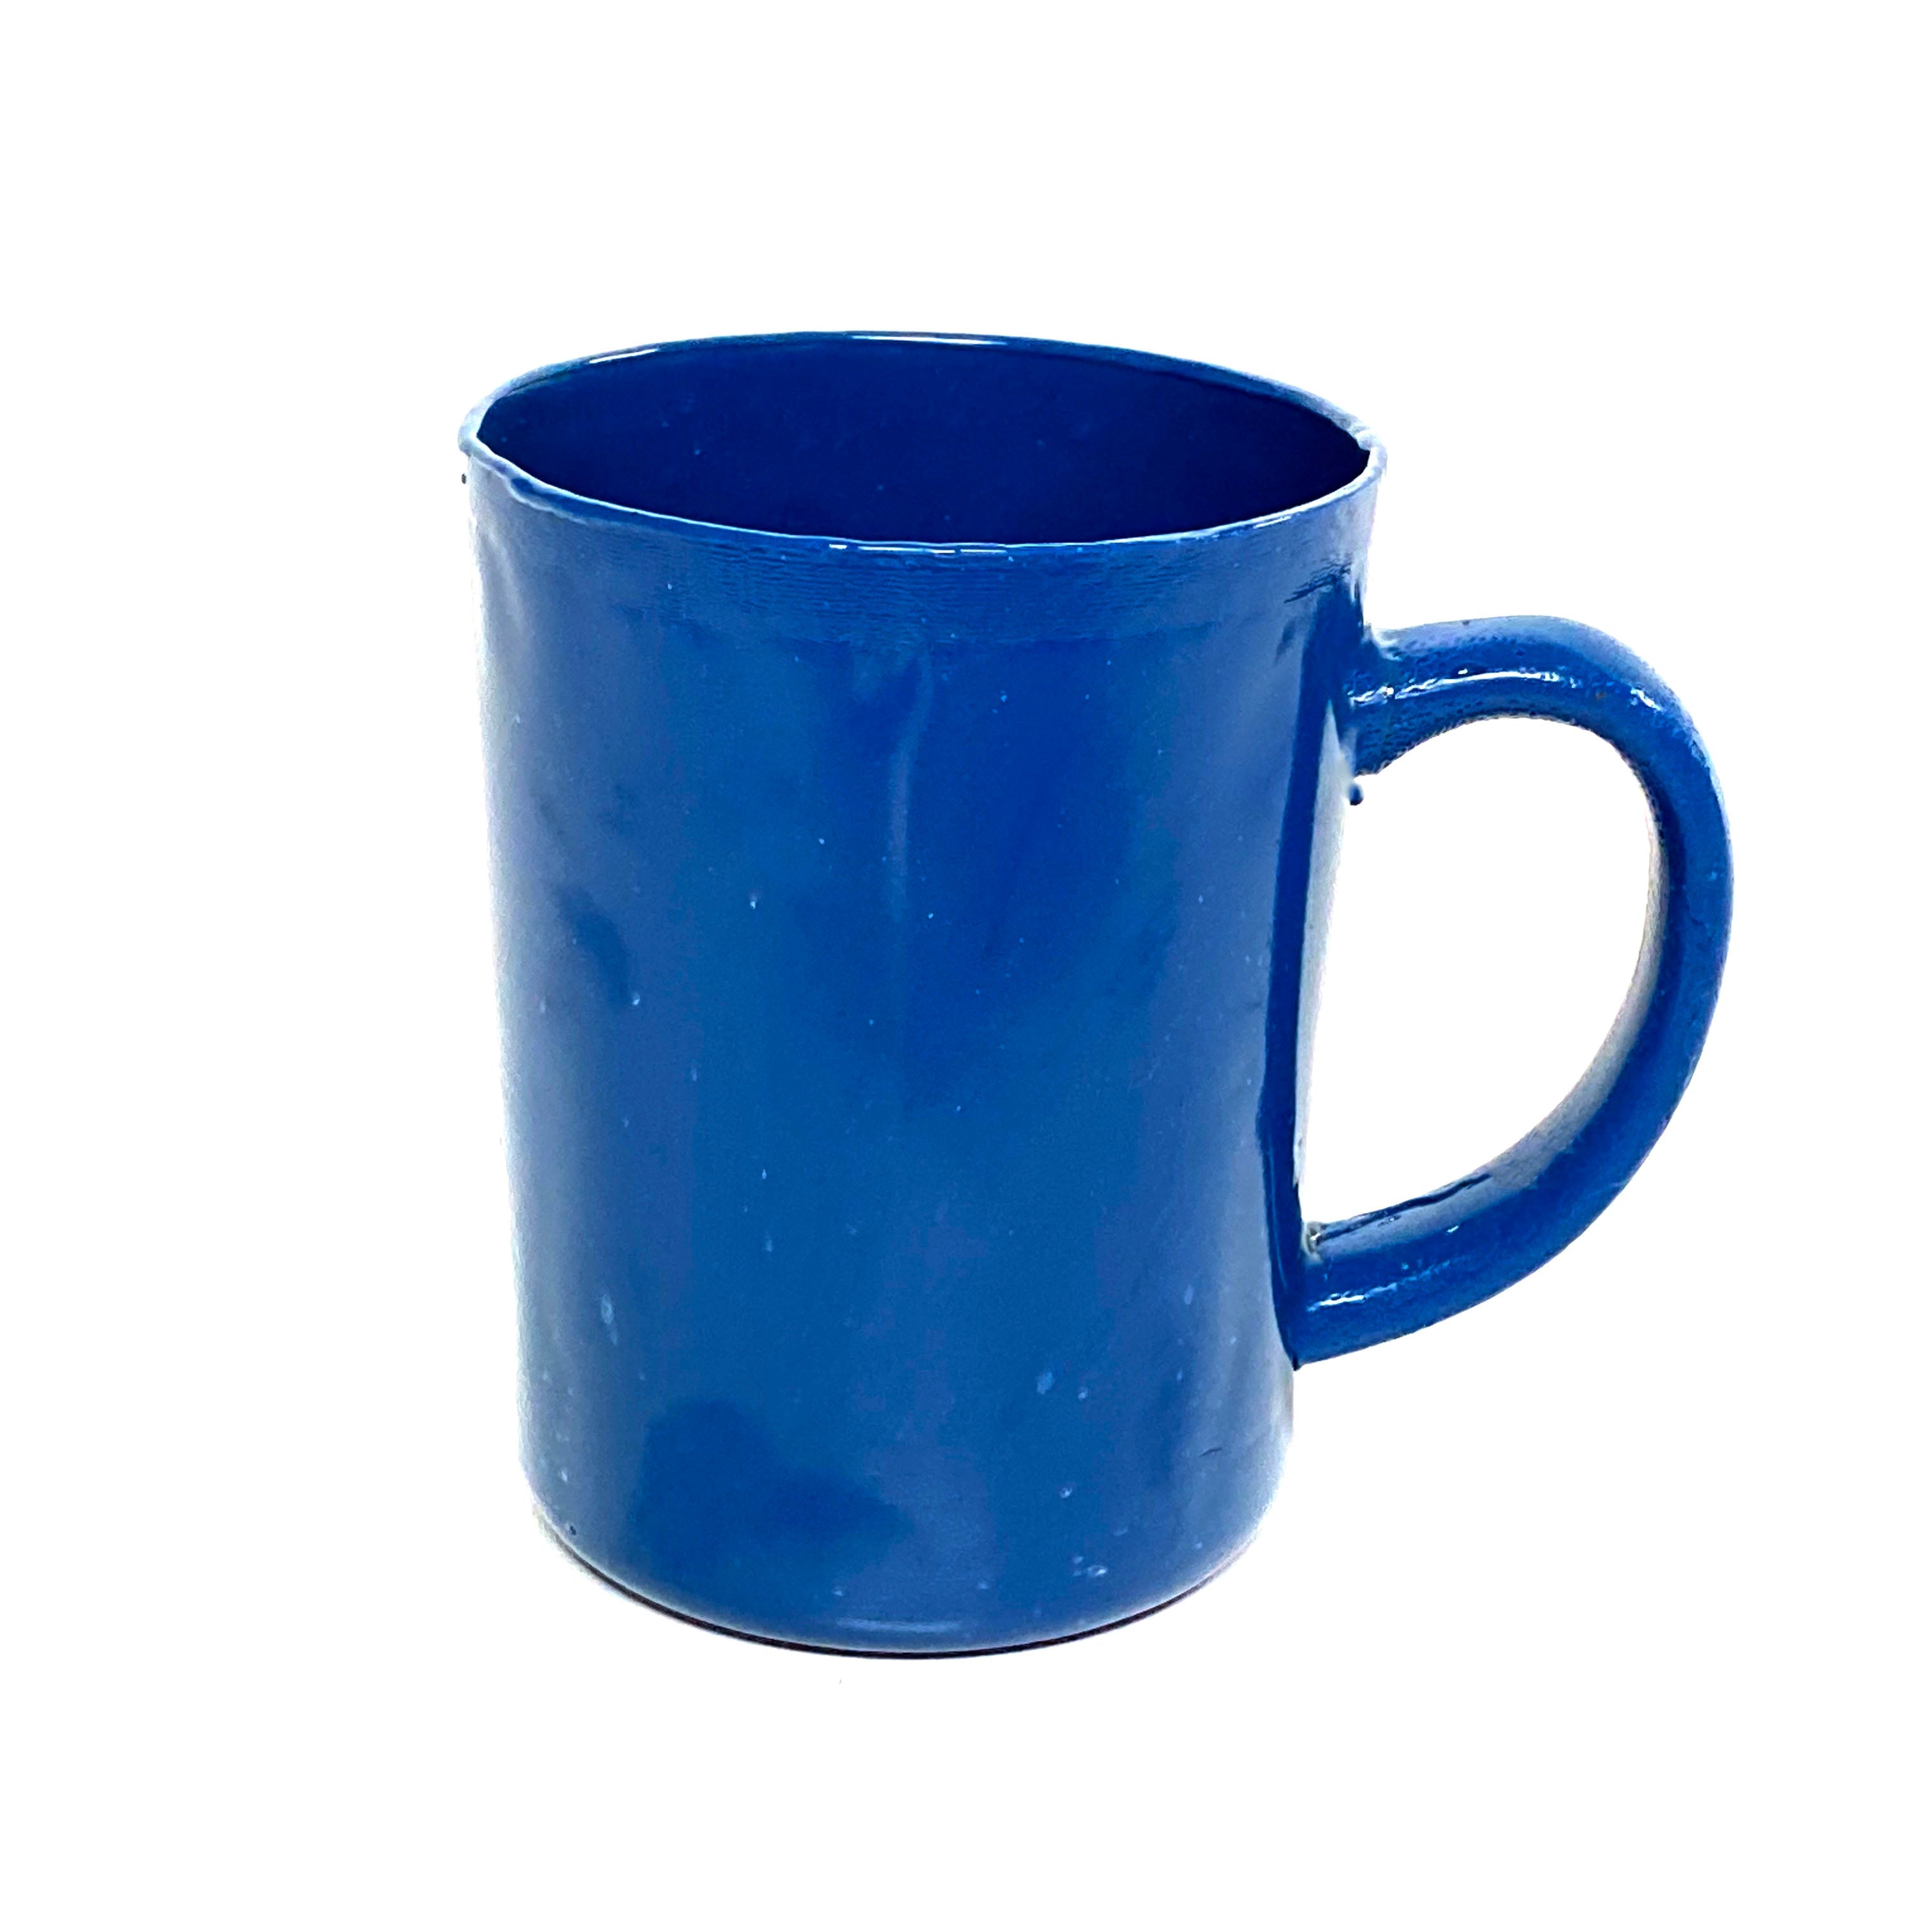 SMASHProps Breakaway Large Mug Prop - COBALT BLUE opaque - Cobalt Blue,Opaque